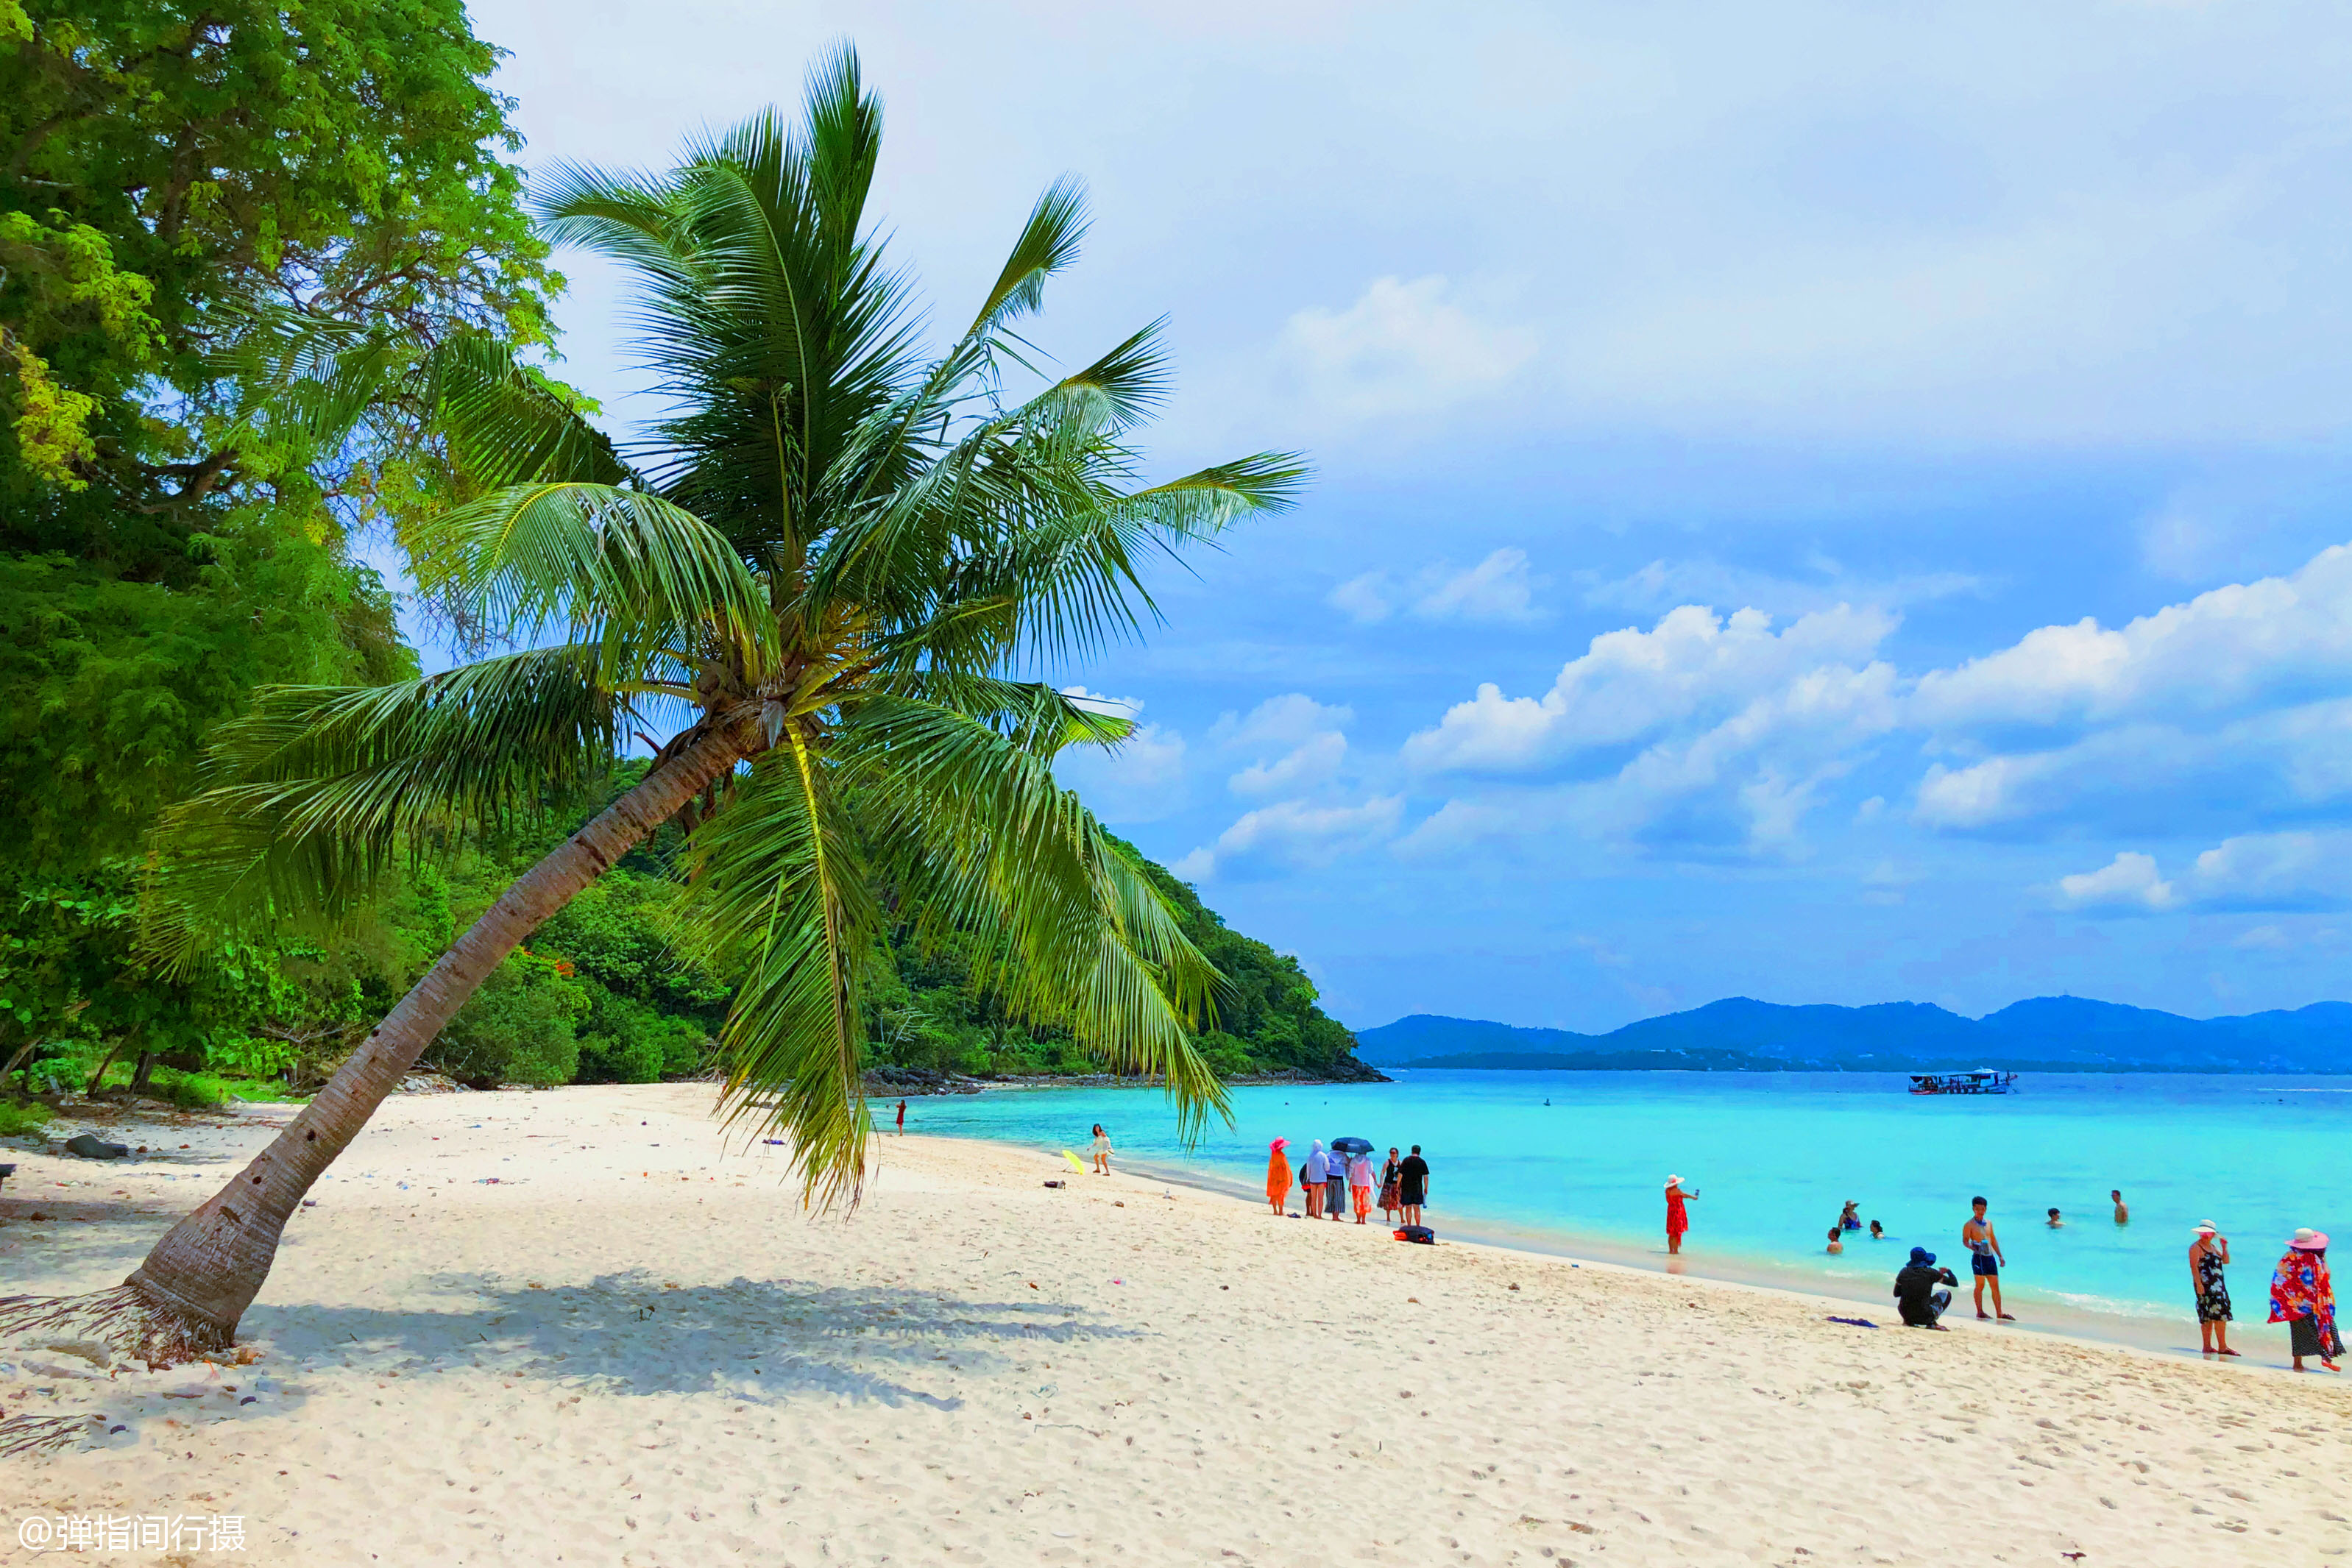 泰国最美的小岛,海岛风光原始秀美,离普吉岛不远却很少人知道